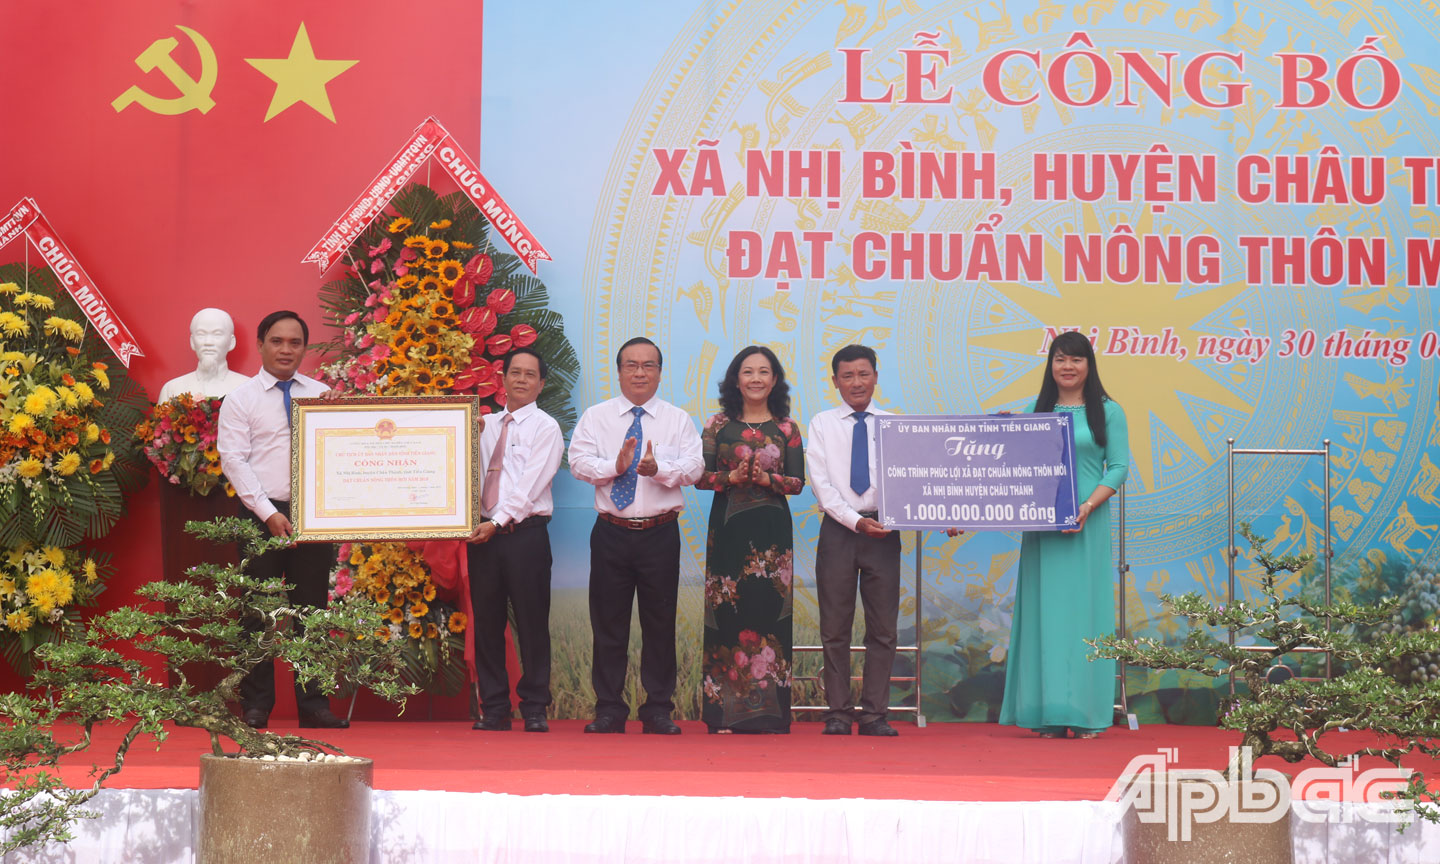 Đồng chí Nguyễn Thị Sáng và đồng chí Phạm Anh Tuấn trao Bằng công nhận và Bảng tượng trưng công trình phúc lợi trị giá 1 tỷ đồng cho lãnh đạo xã Nhị Bình.